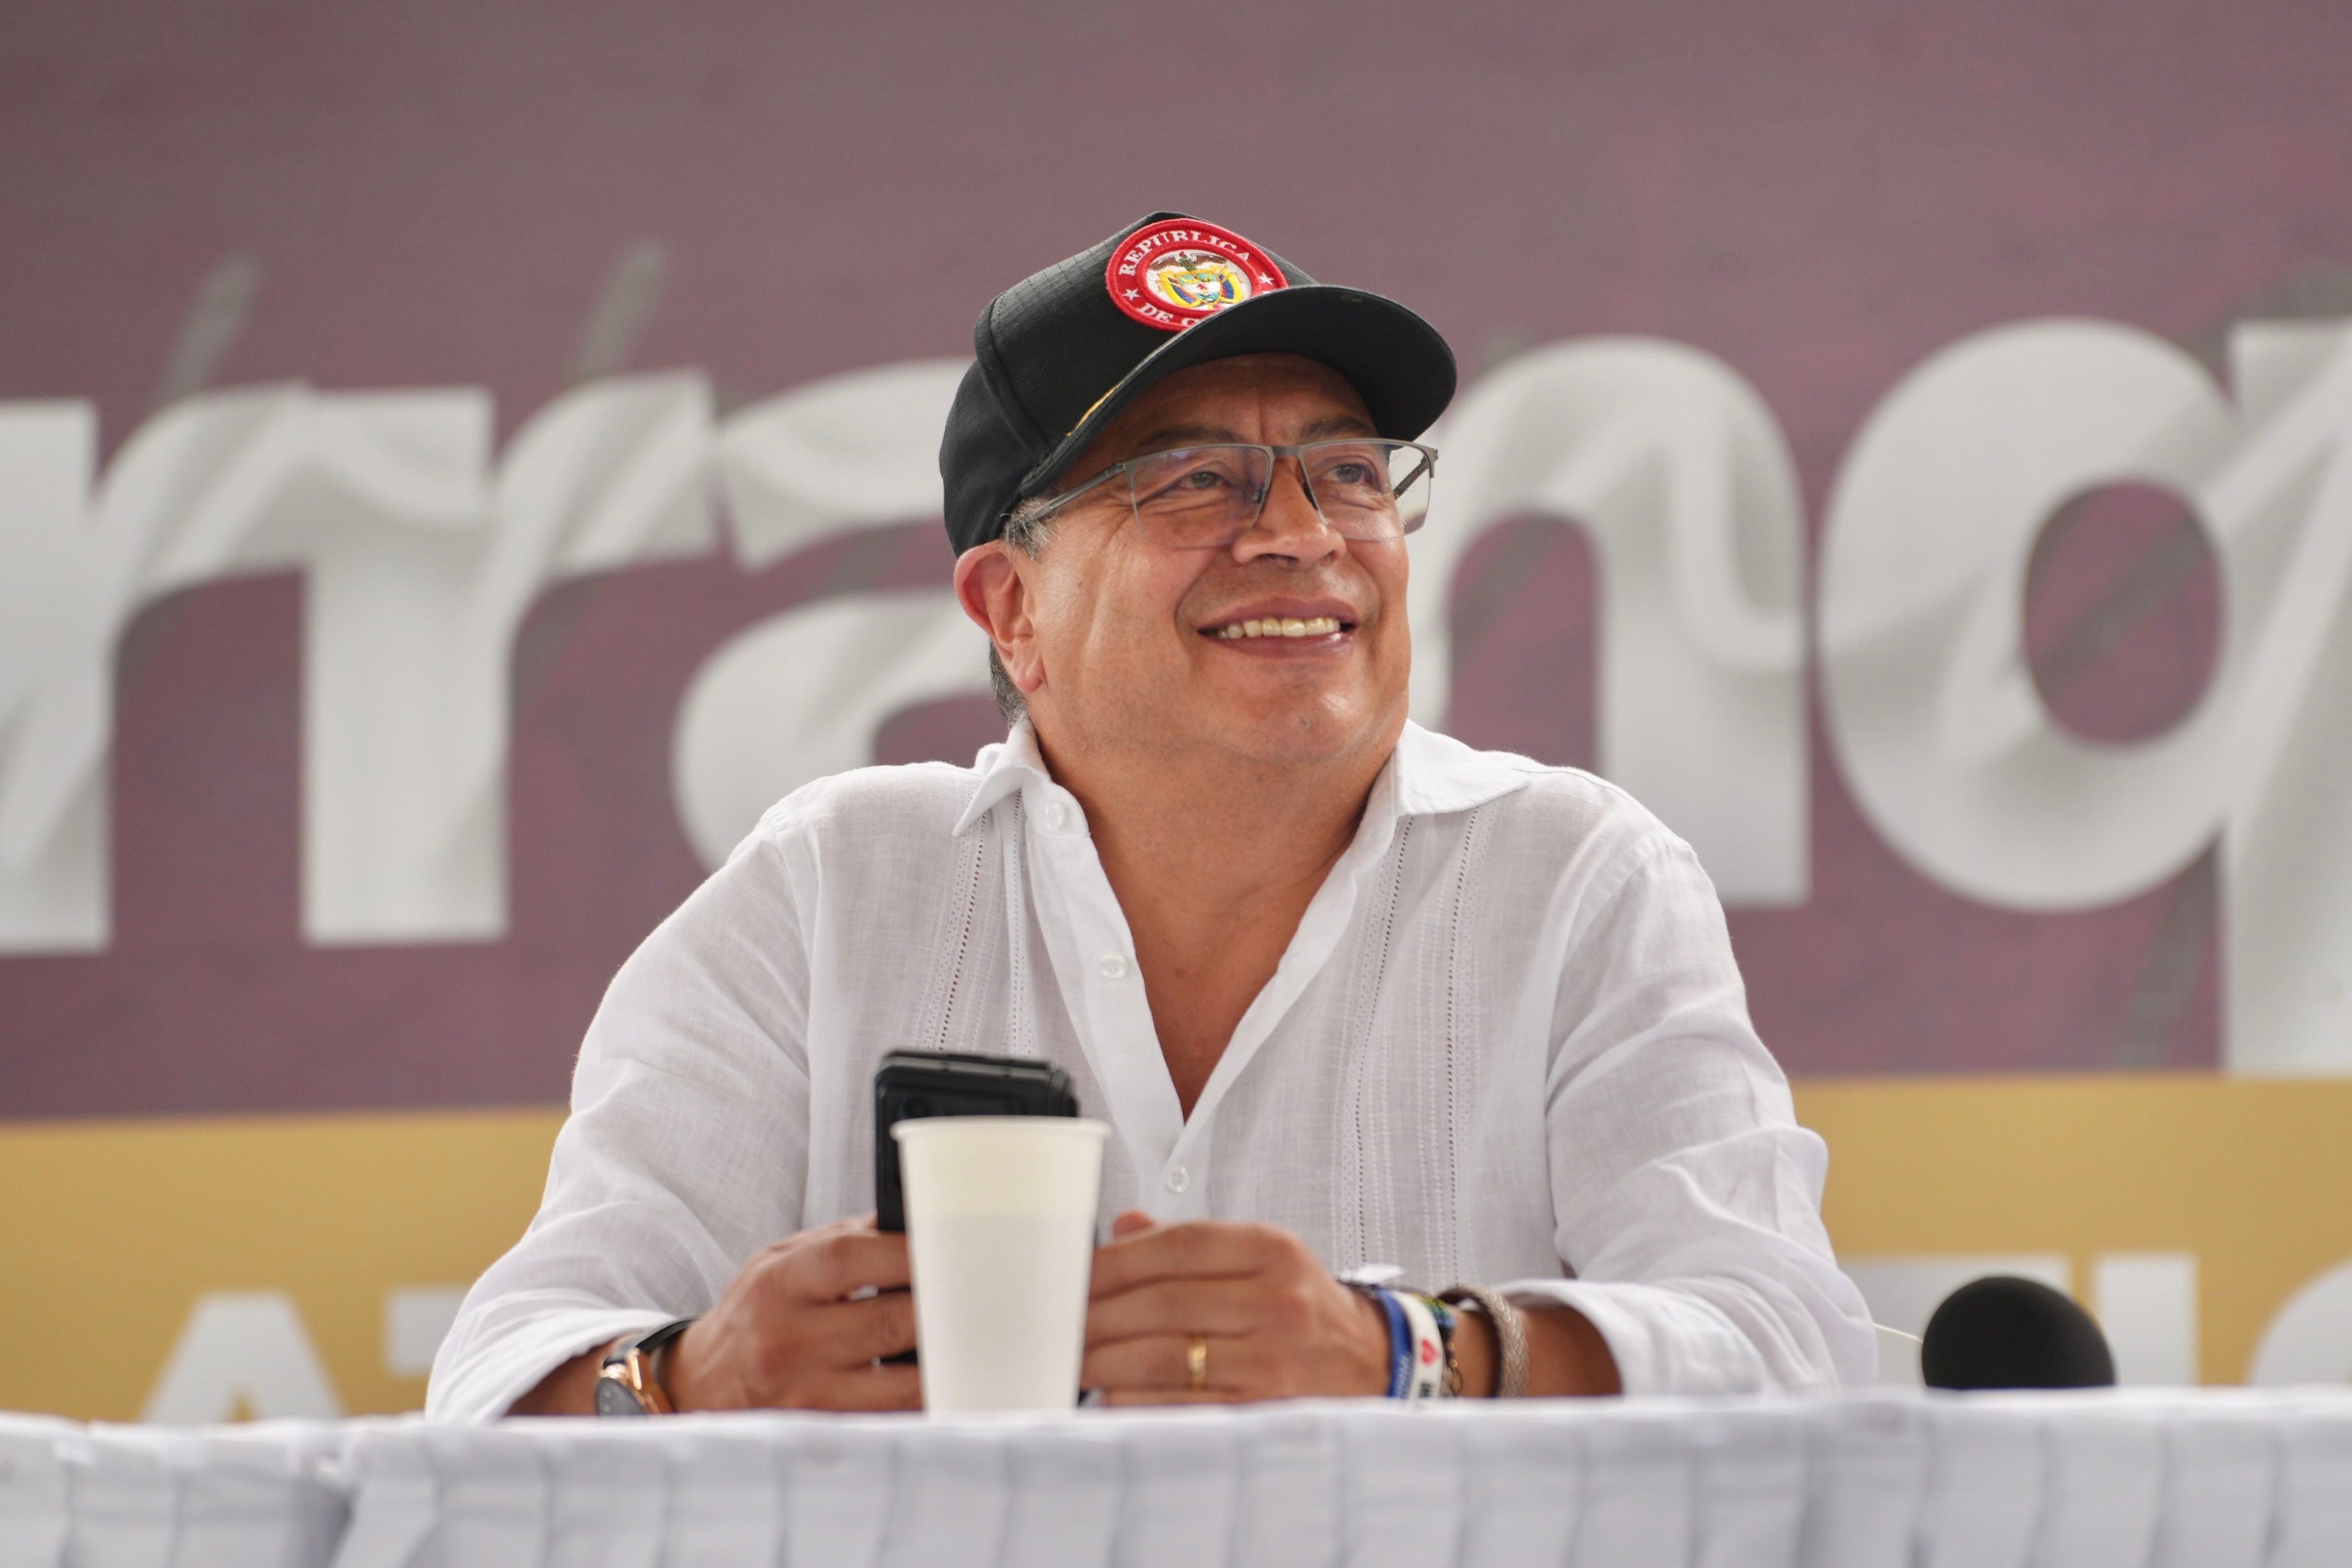 El presidente Gustavo Petro señaló que el secuestro era una "transacción mercantil" por lo que rechazó estas acciones delictivas por parte del ELN - crédito Juan Diego Cano/Presidencia